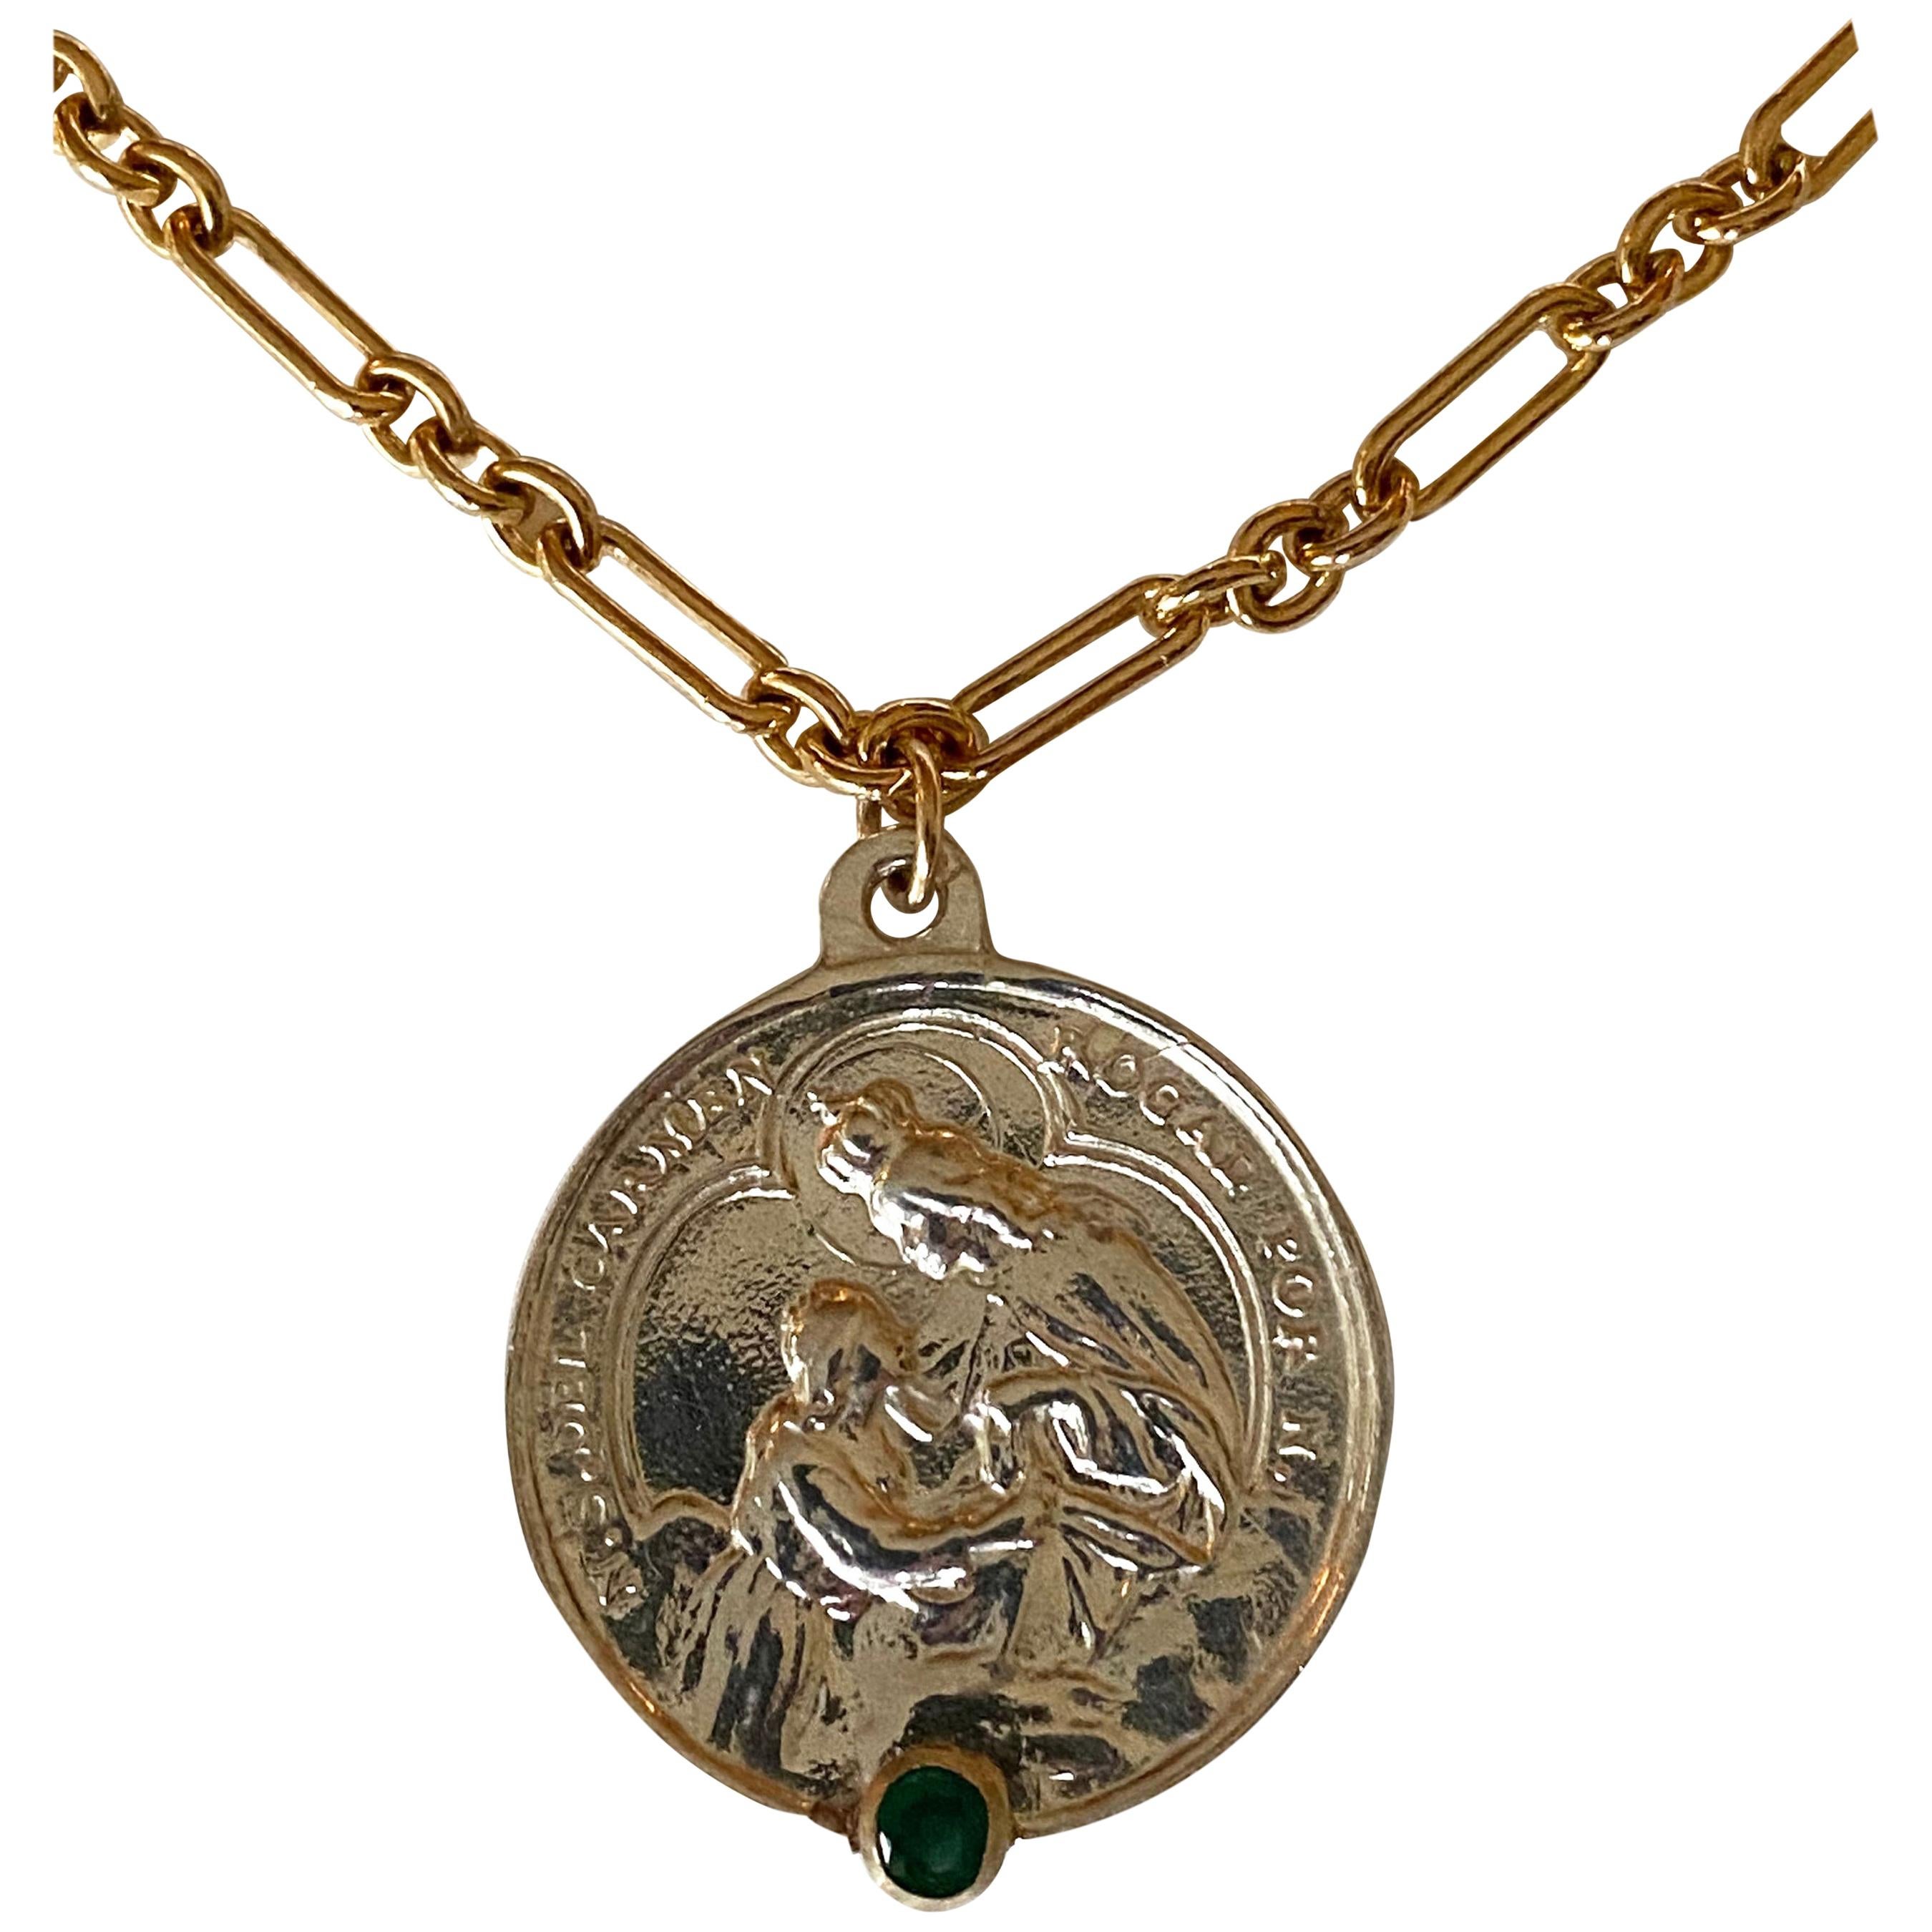 Collier Médaille Sacrée en Argent Sterling Emeraude Chaîne Spirituelle Religieuse
Chaîne en or

Pièce exclusive avec une médaille ronde de la Vierge Marie en argent avec une émeraude sertie dans un anneau en or et avec une chaîne en or. Le collier